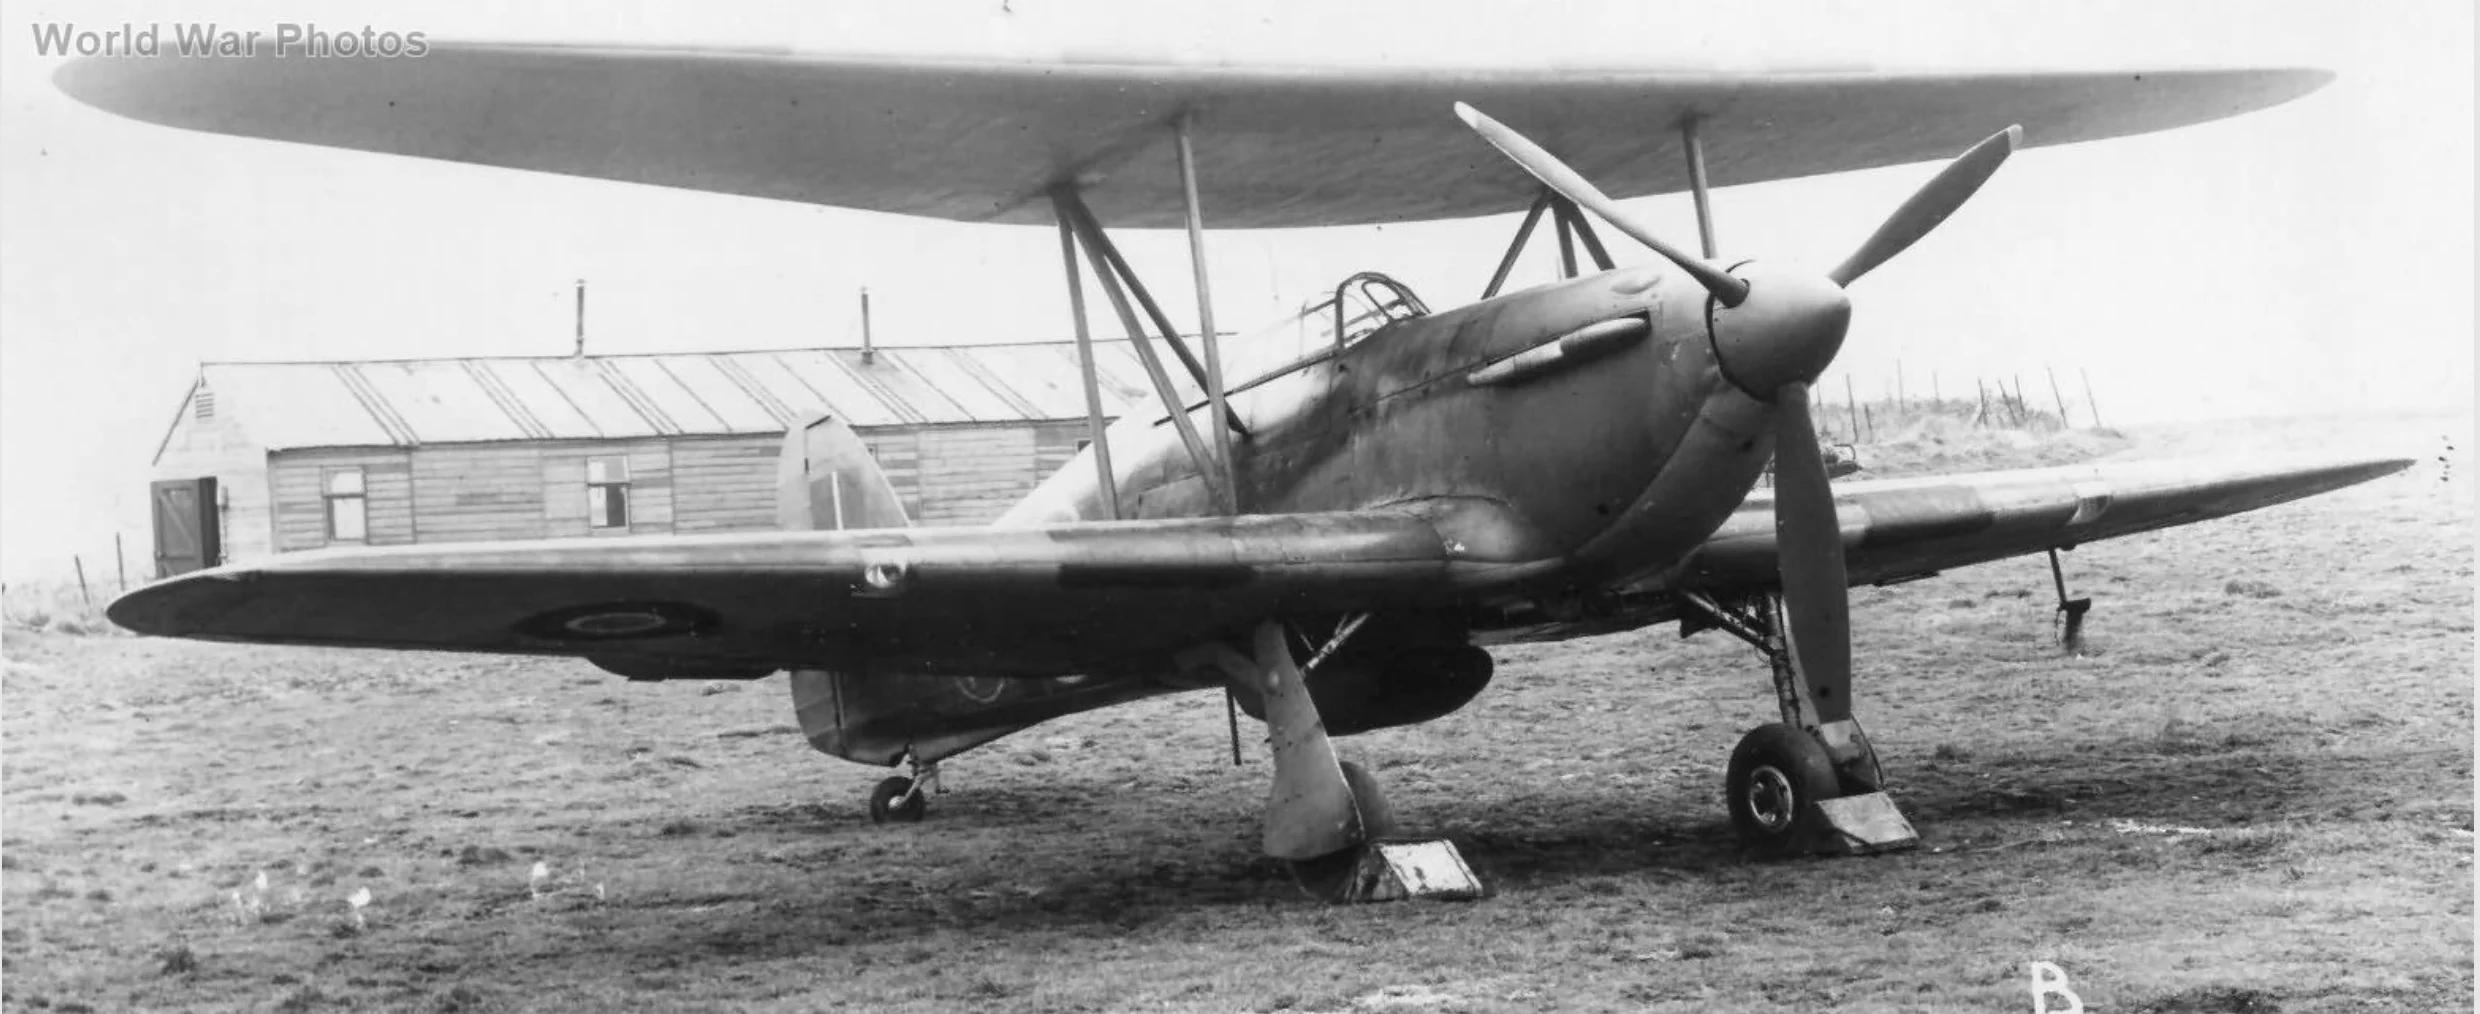 The Hilson FH.40 Hurricane.